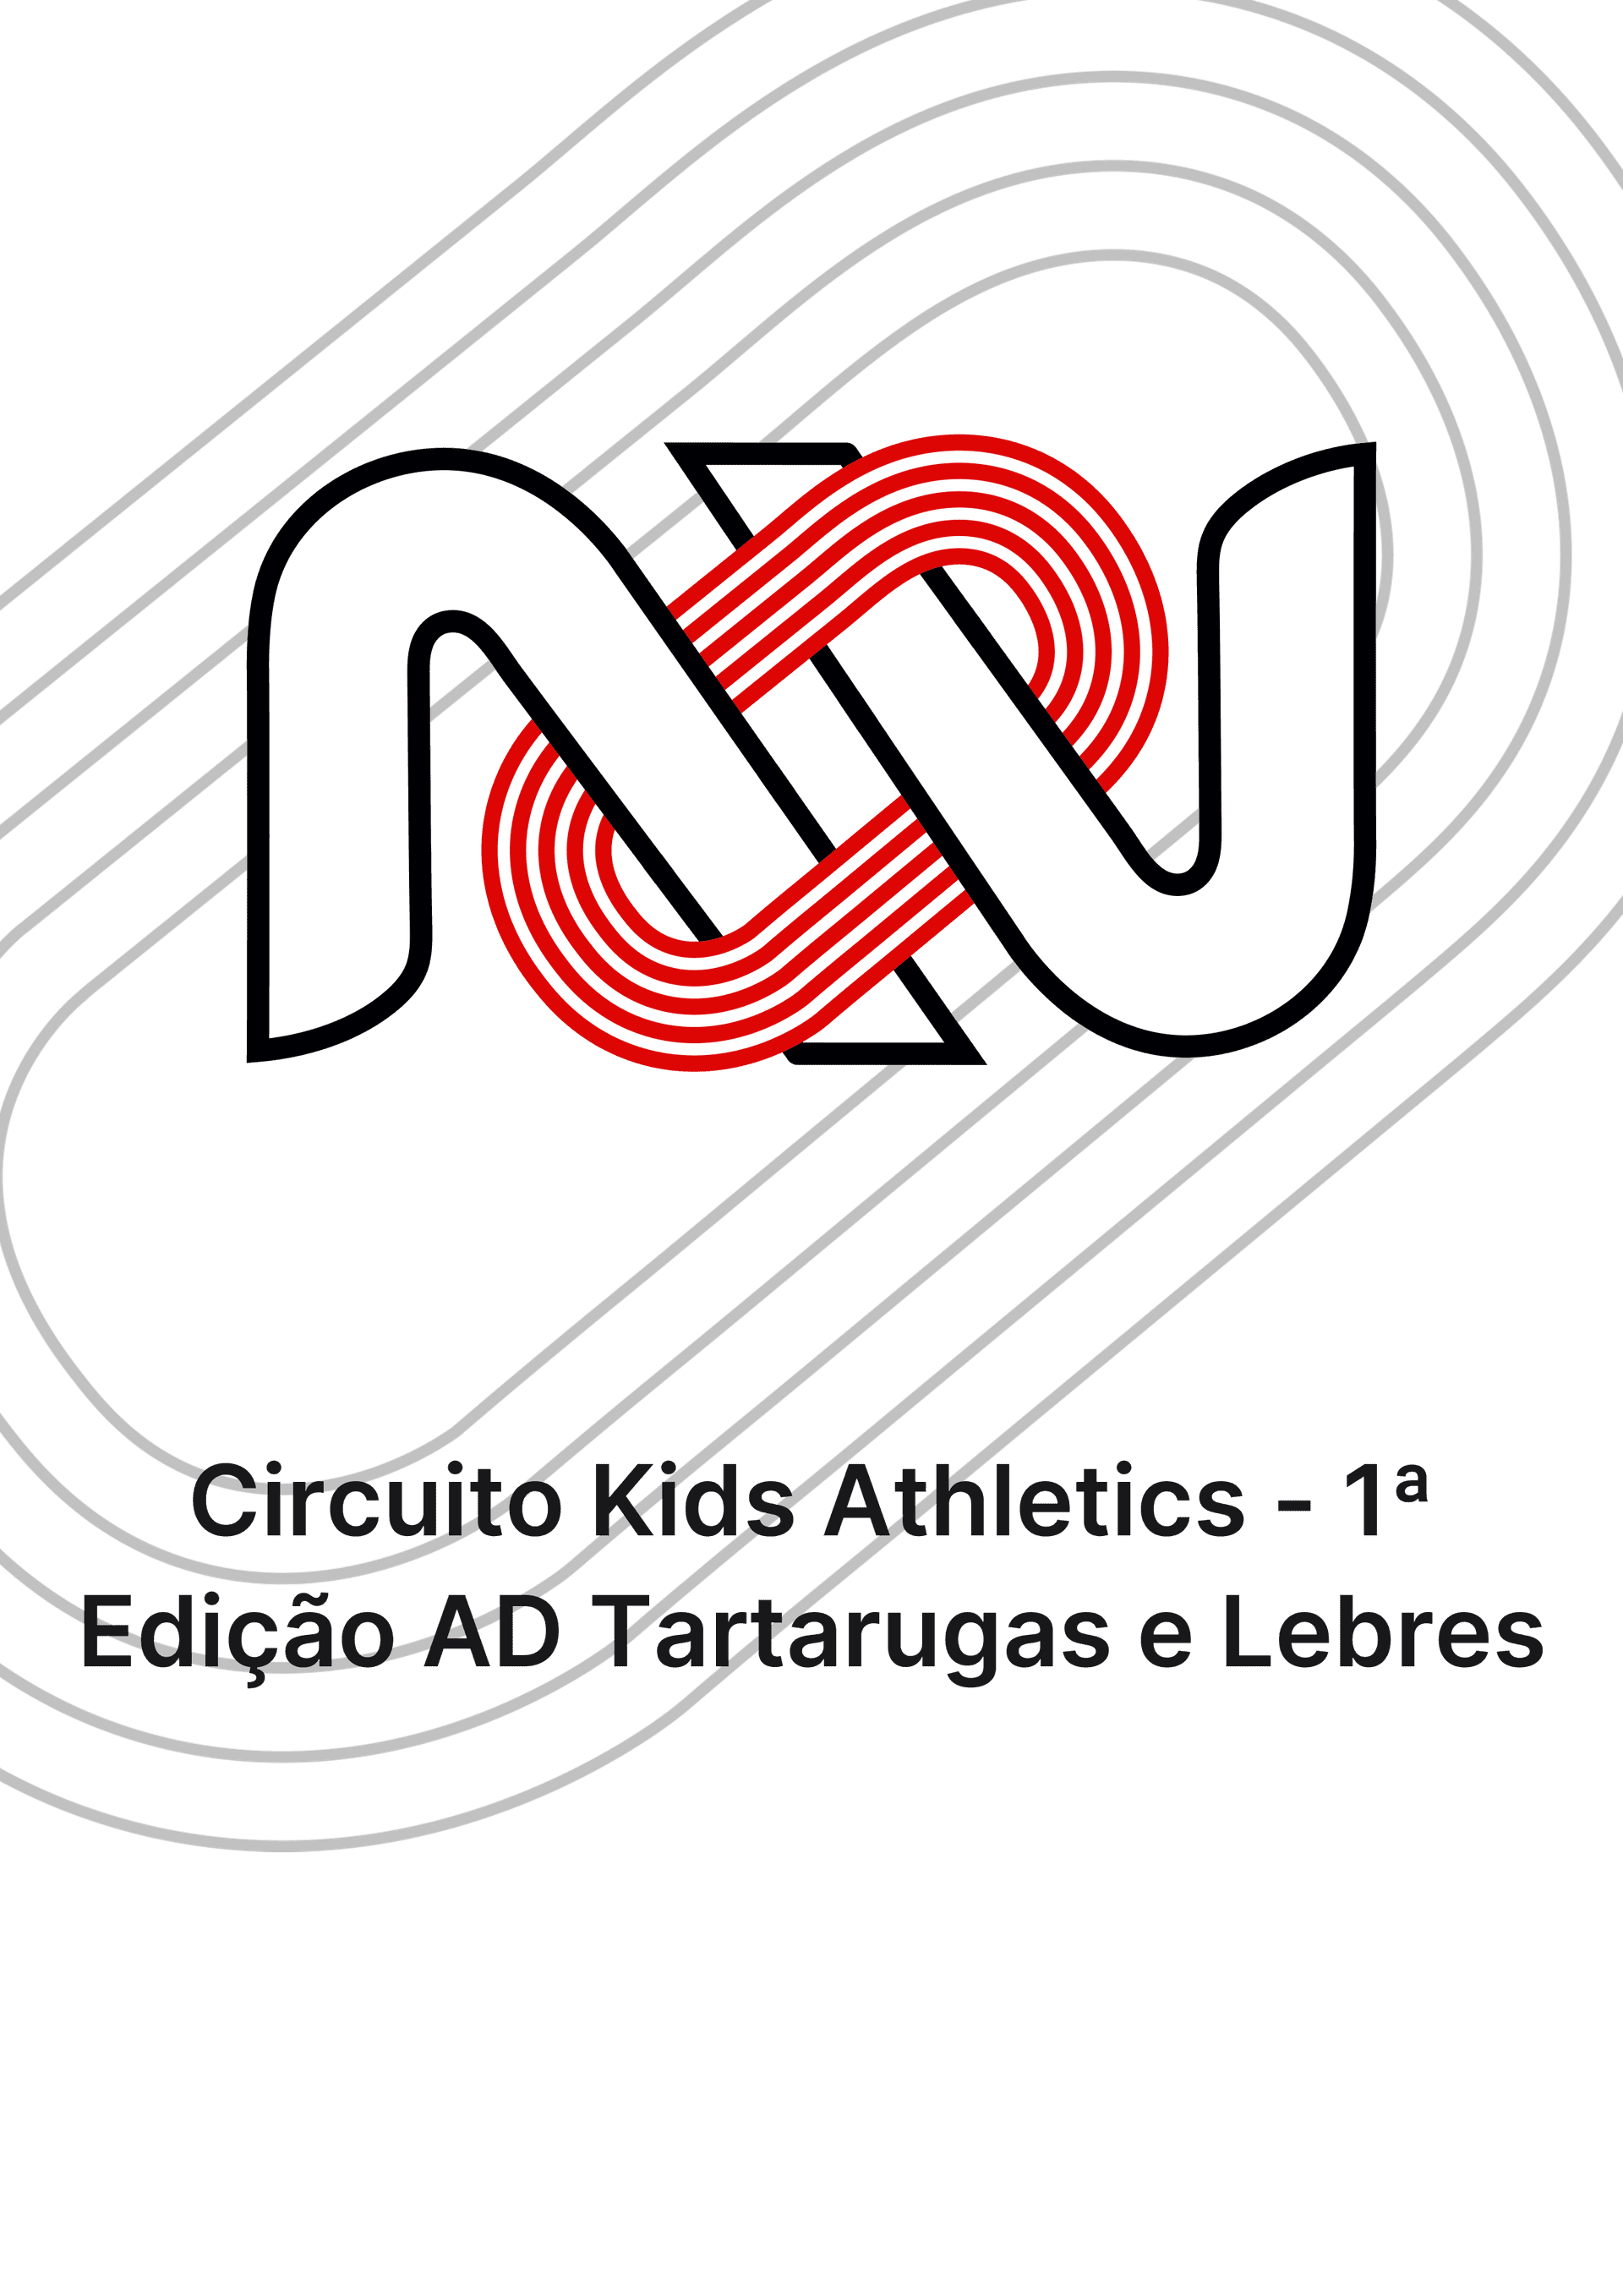 Circuito Kids Athletics - 1ª Edição AD Tartarugas e Lebres